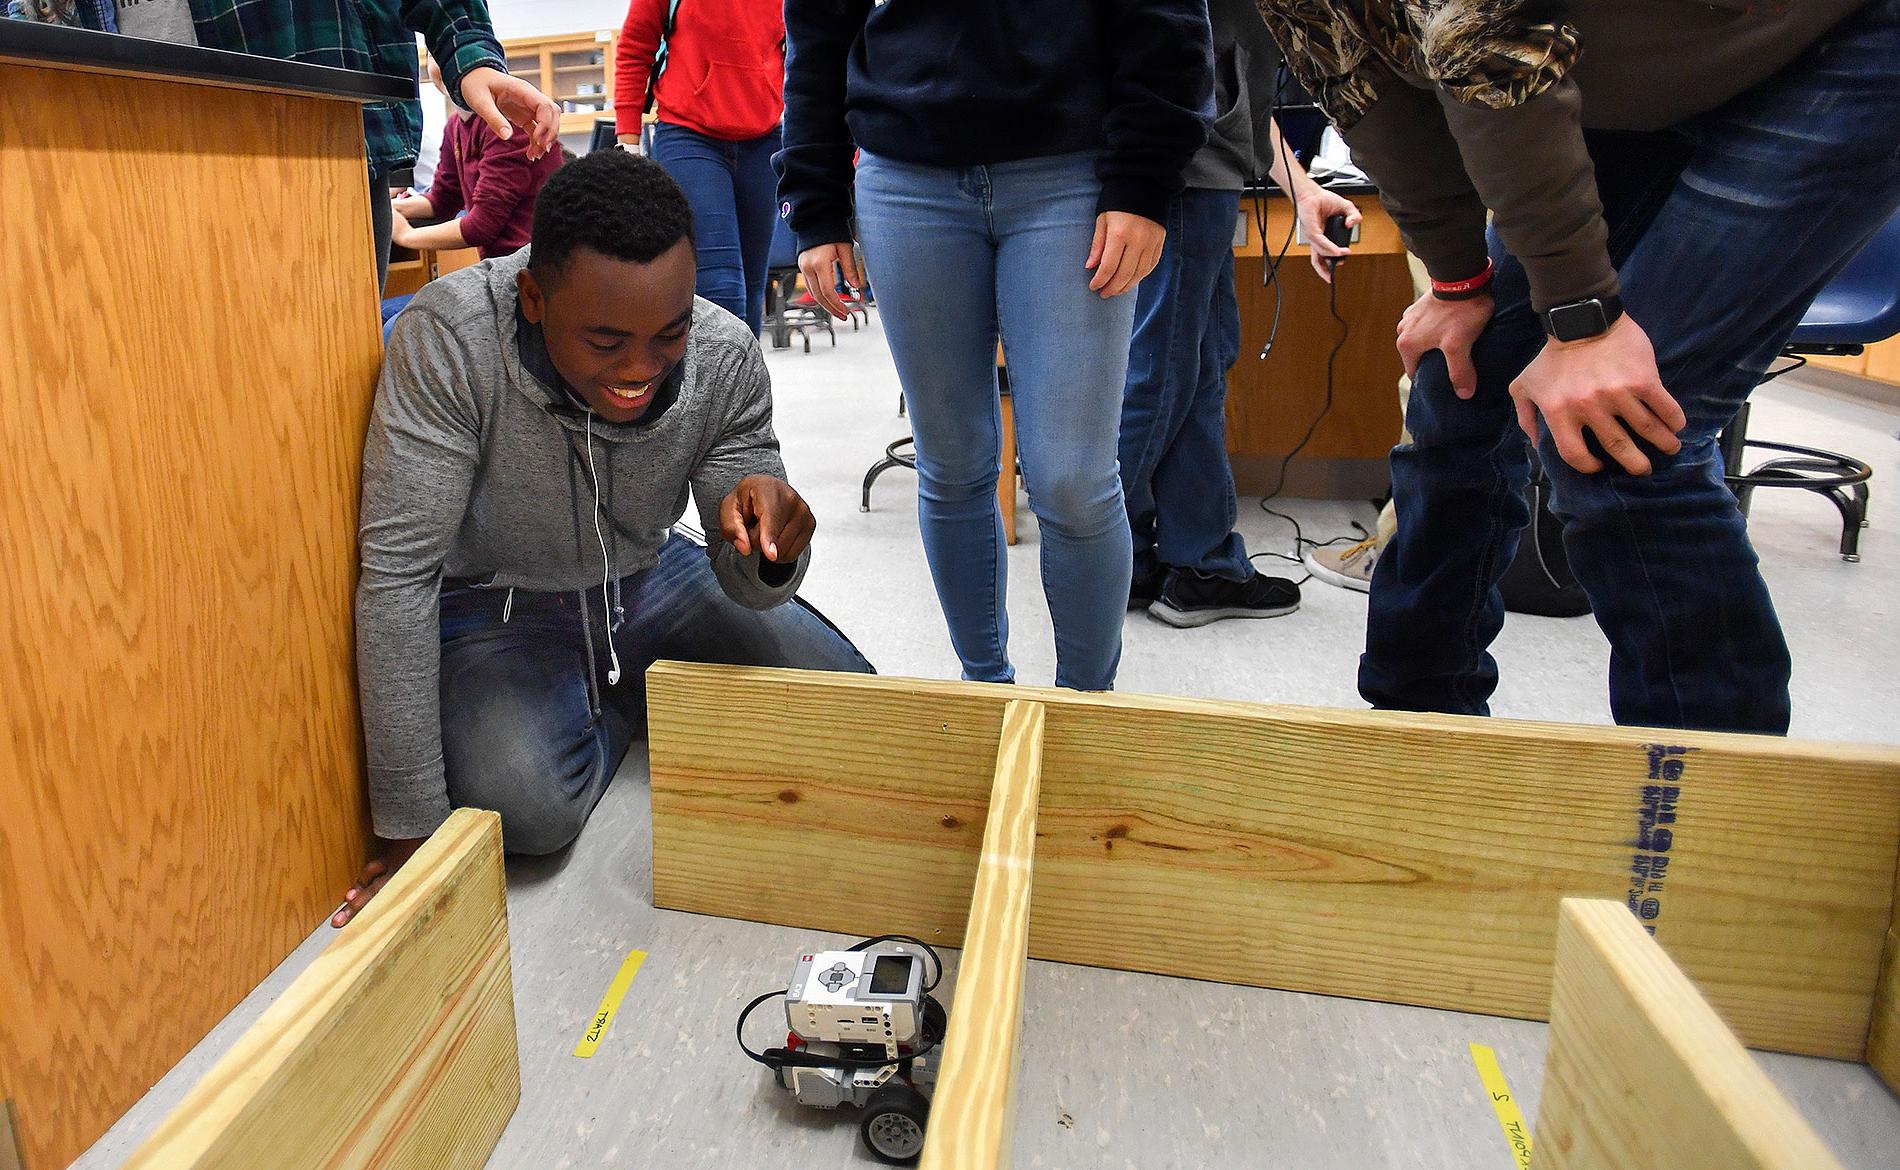 Students pilot a robot through a wooden maze